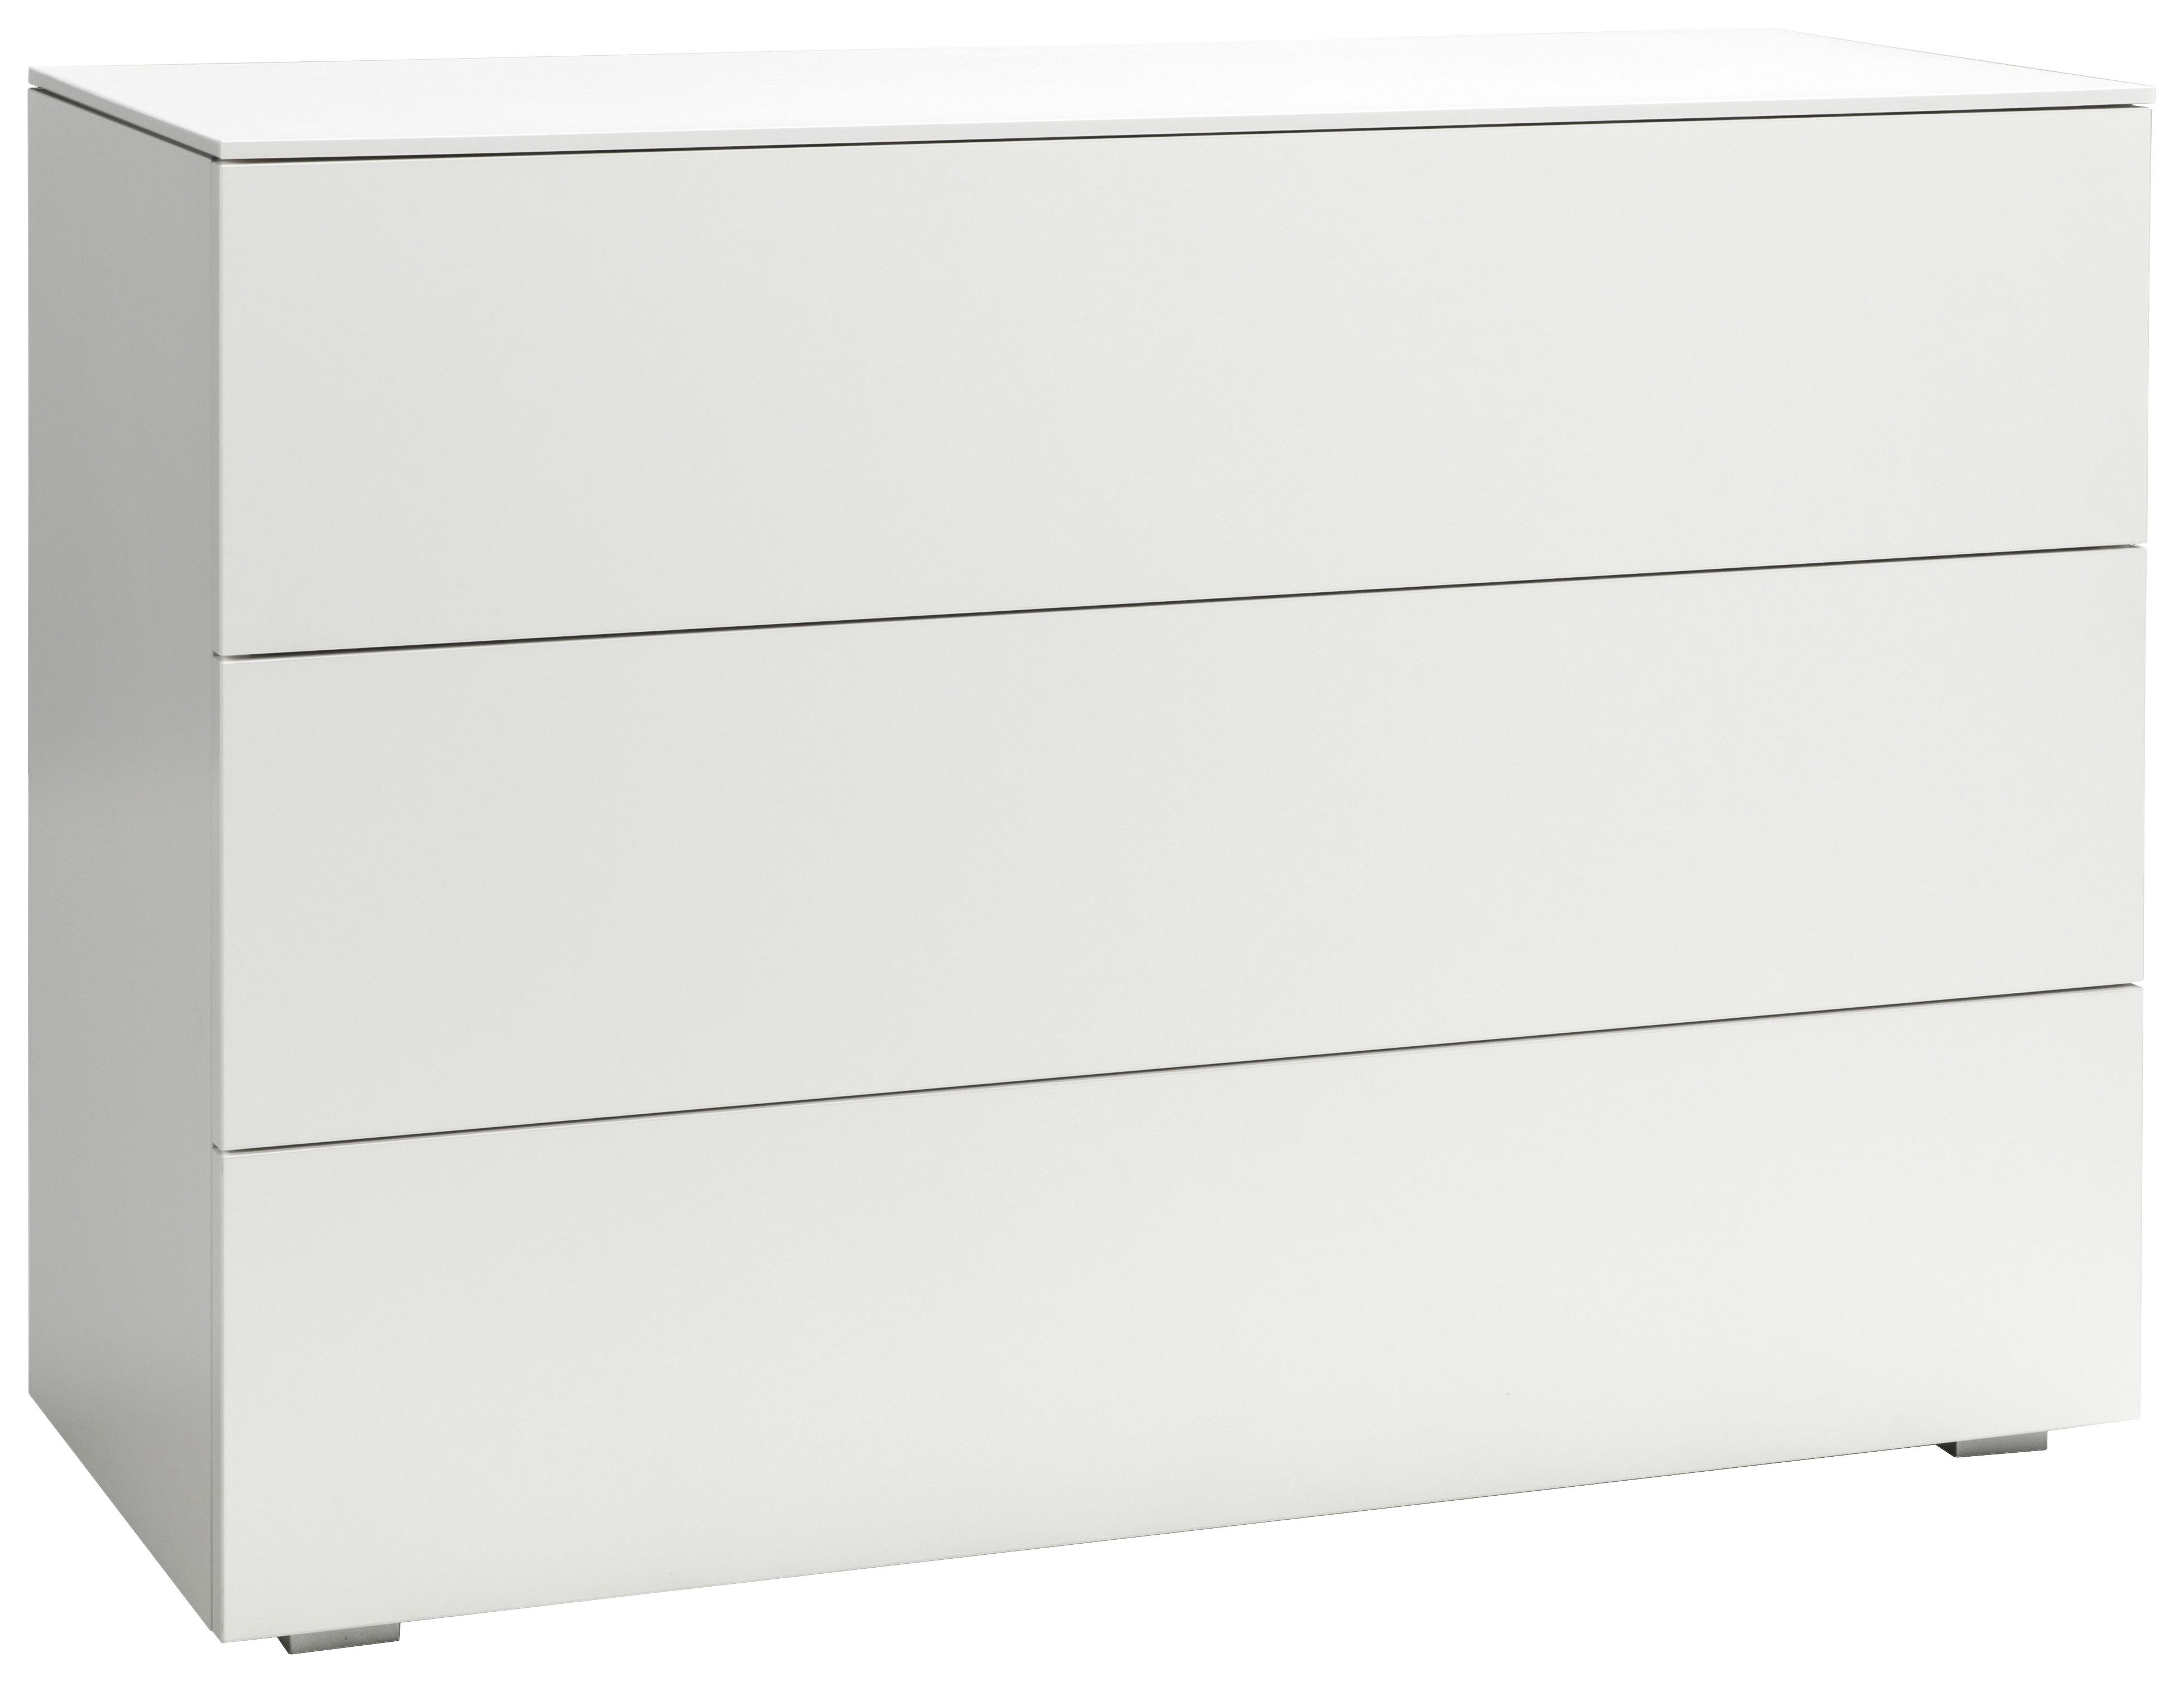 KOMMODE Weiß  - Silberfarben/Weiß, Design, Metall (105/46/74cm) - Hasena